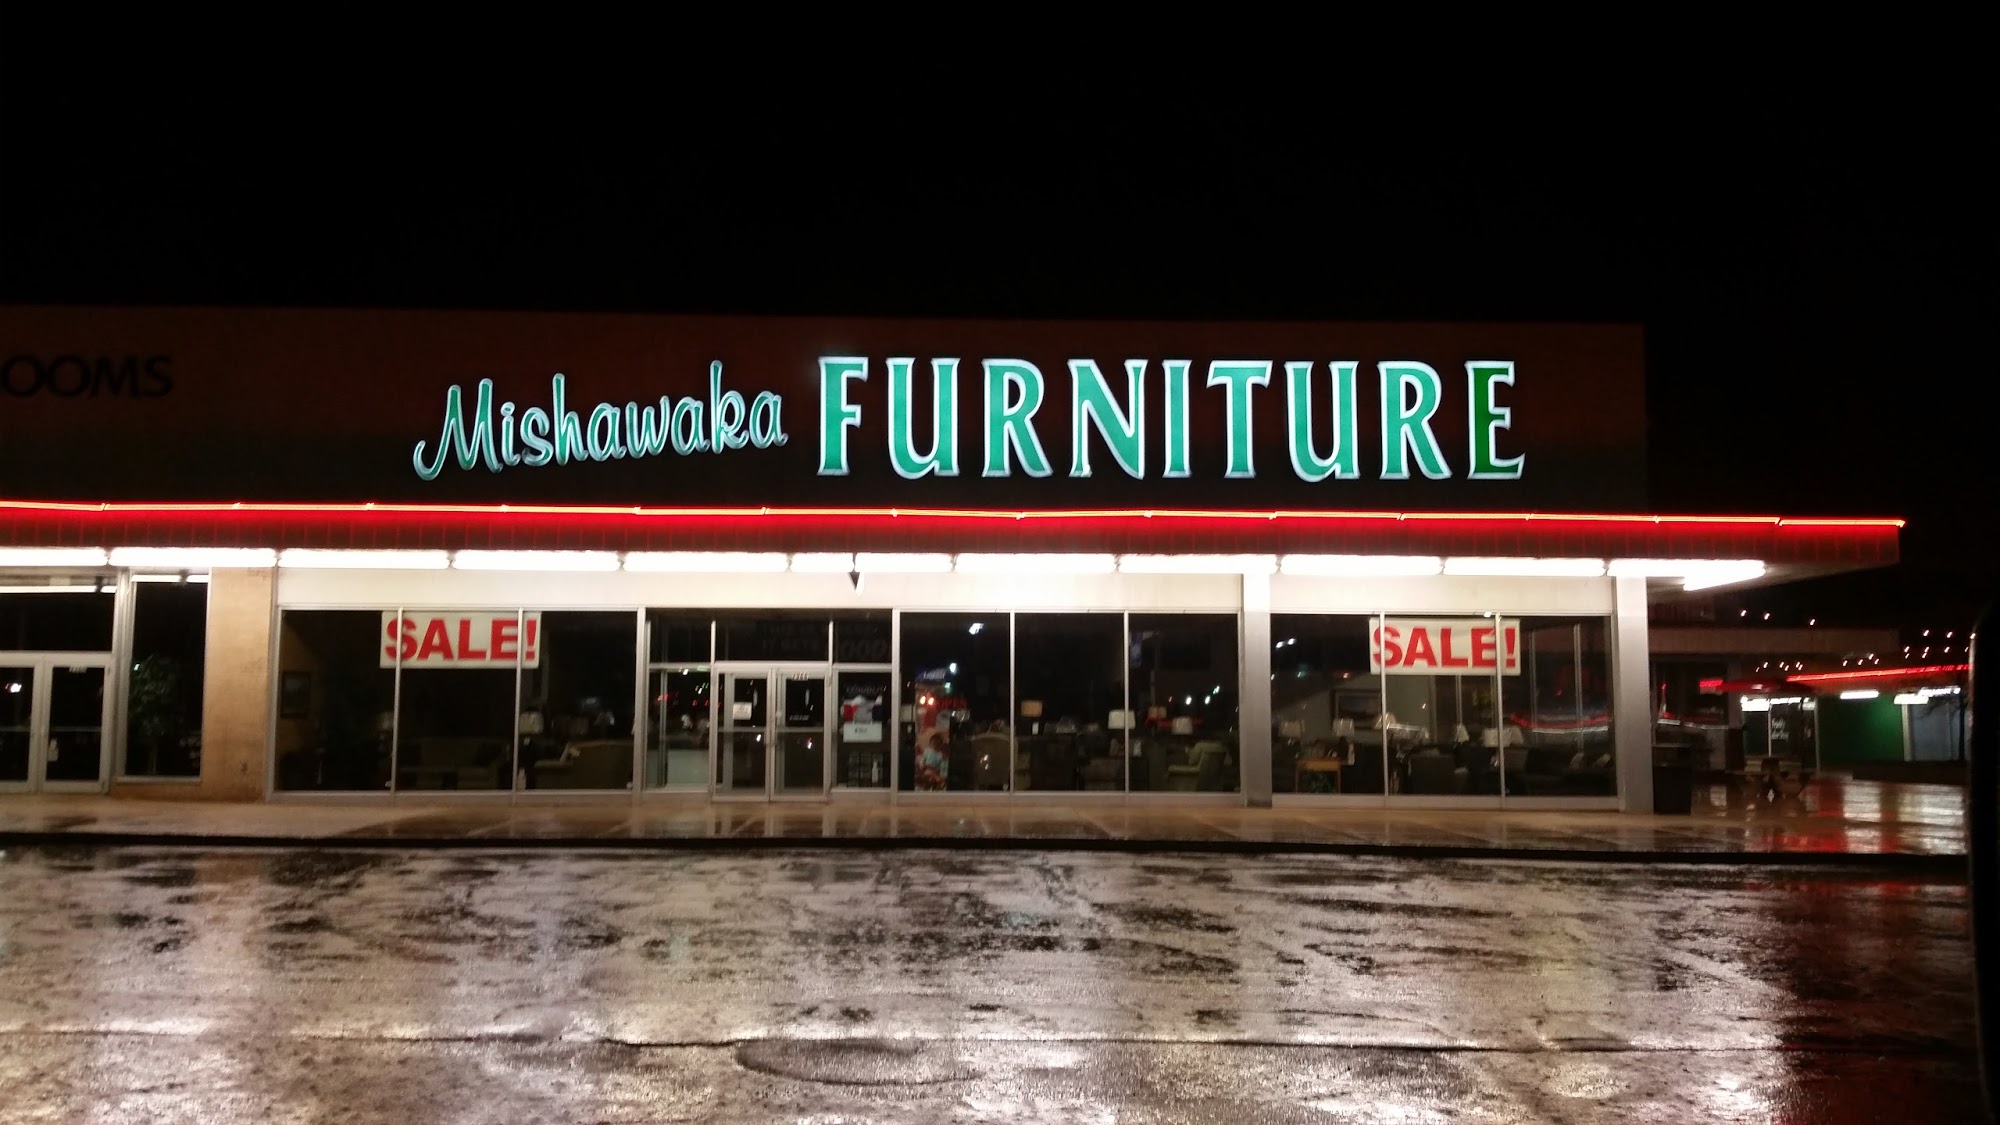 Mishawaka Furniture